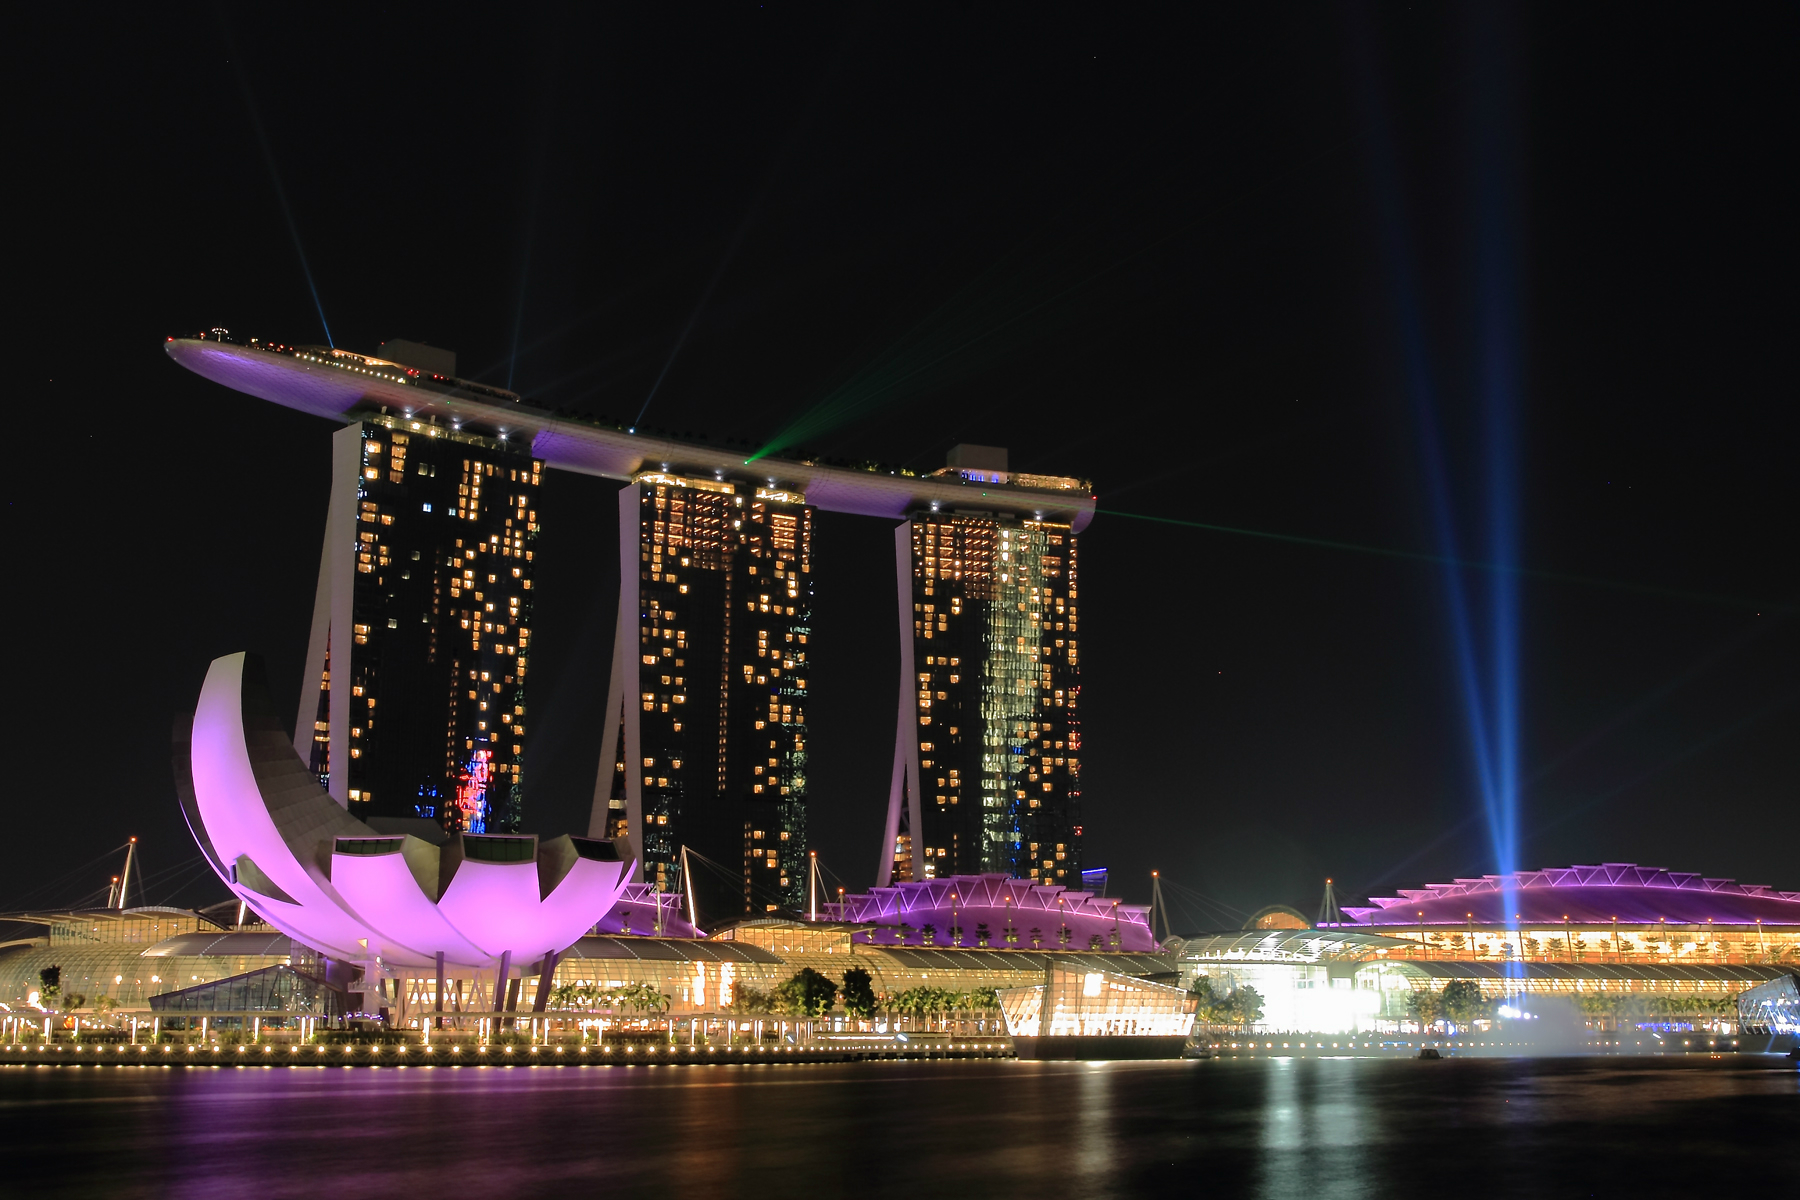 新加坡夜景壁纸图片